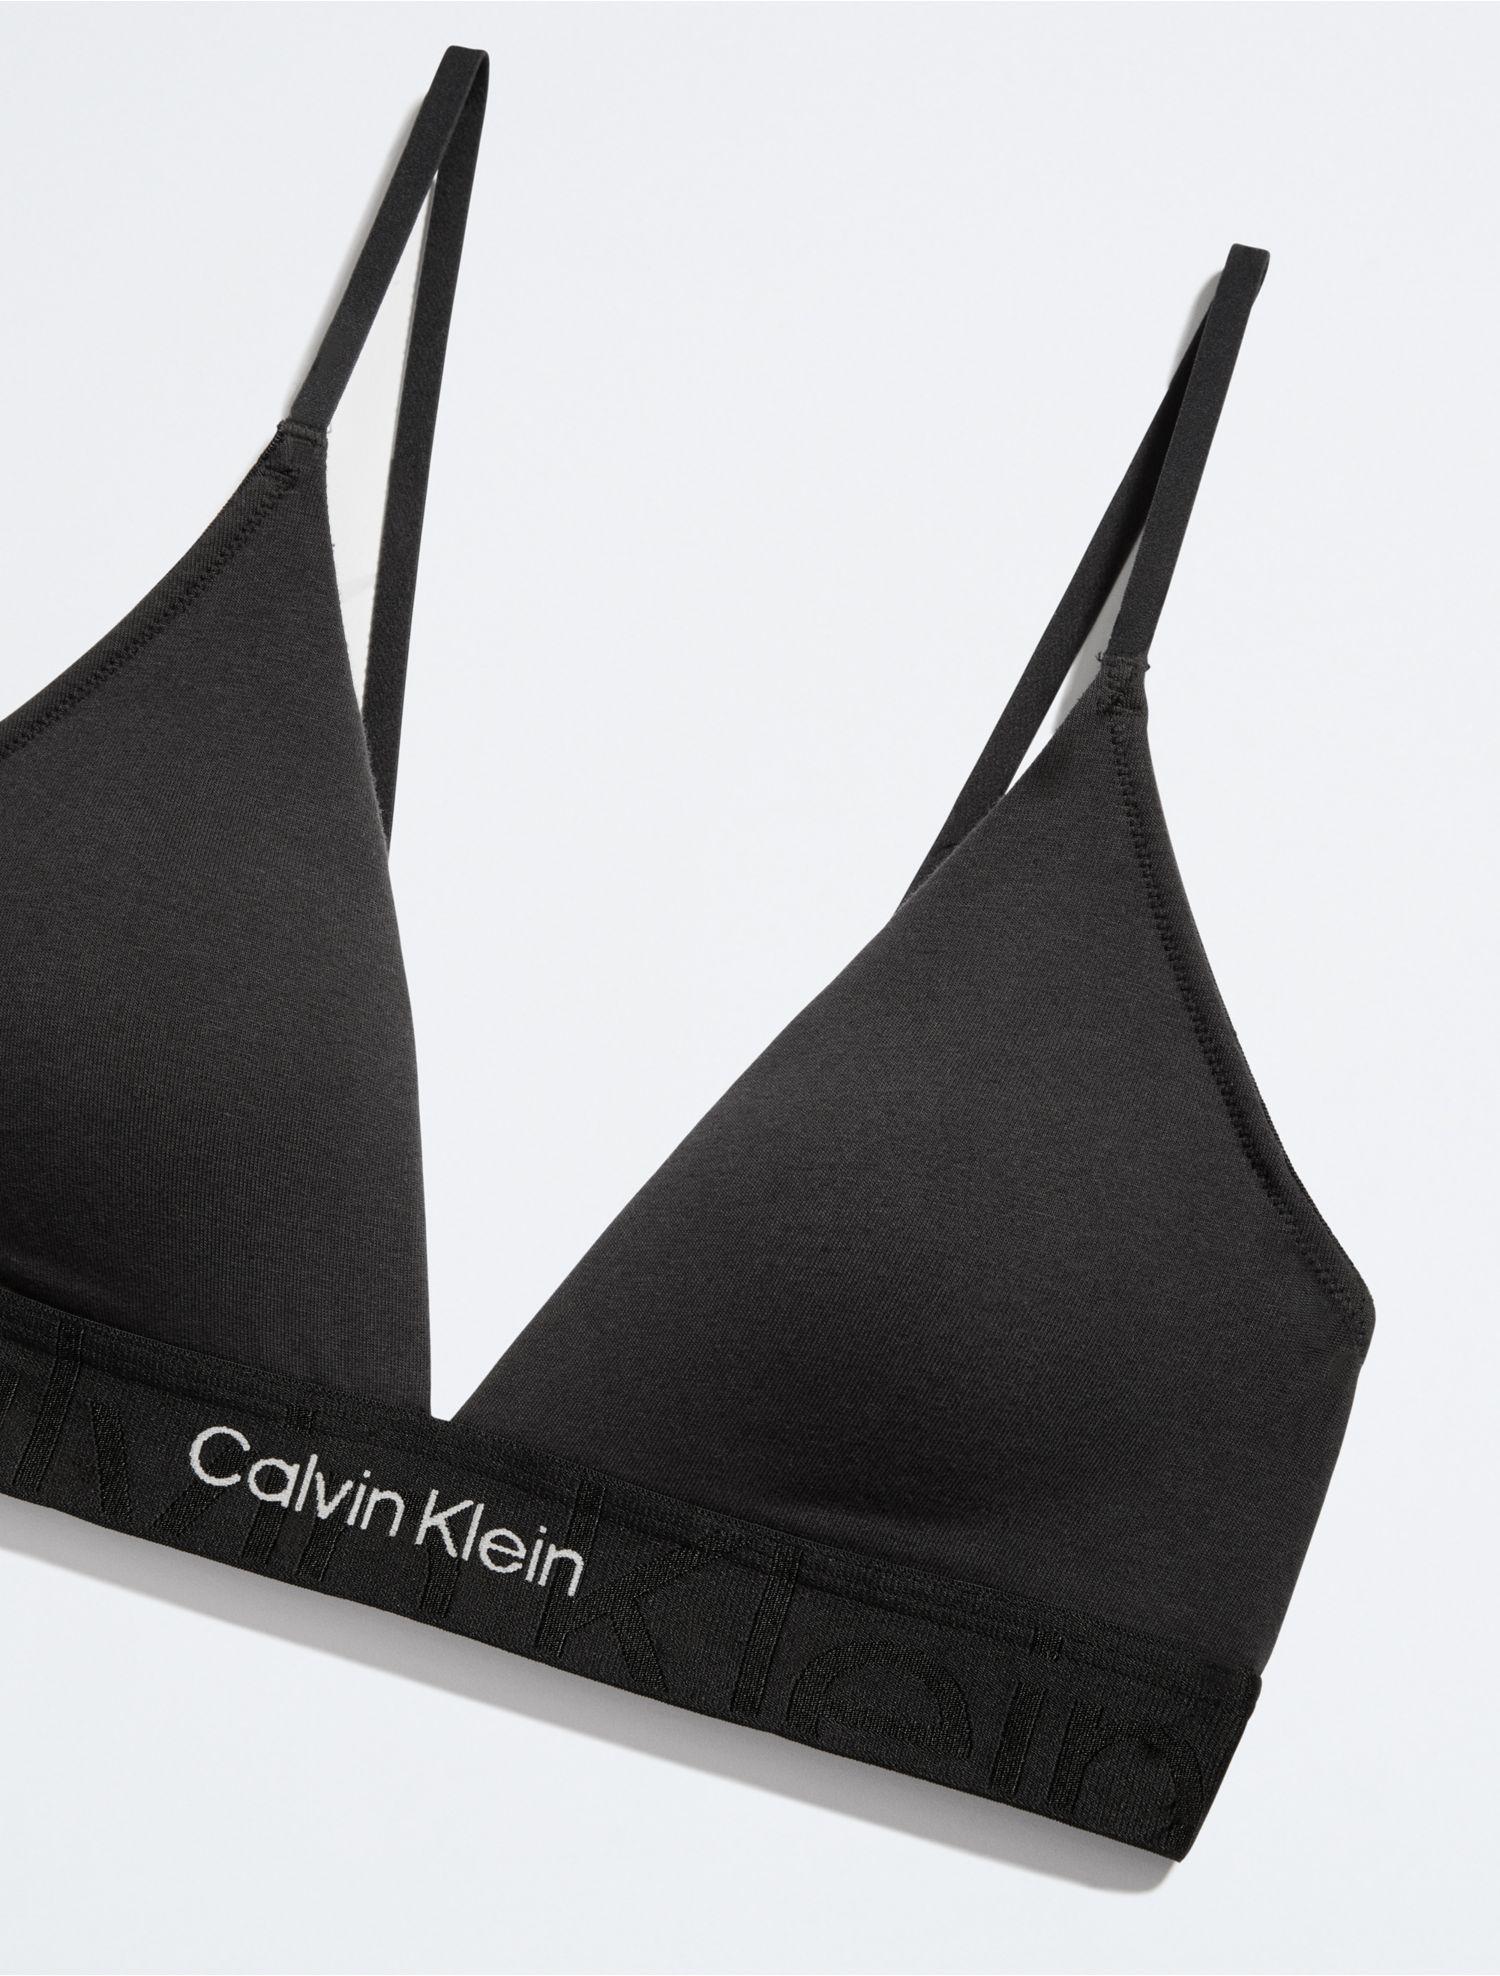 Calvin Klein Underwear Light Lined Triangle Bra in Black